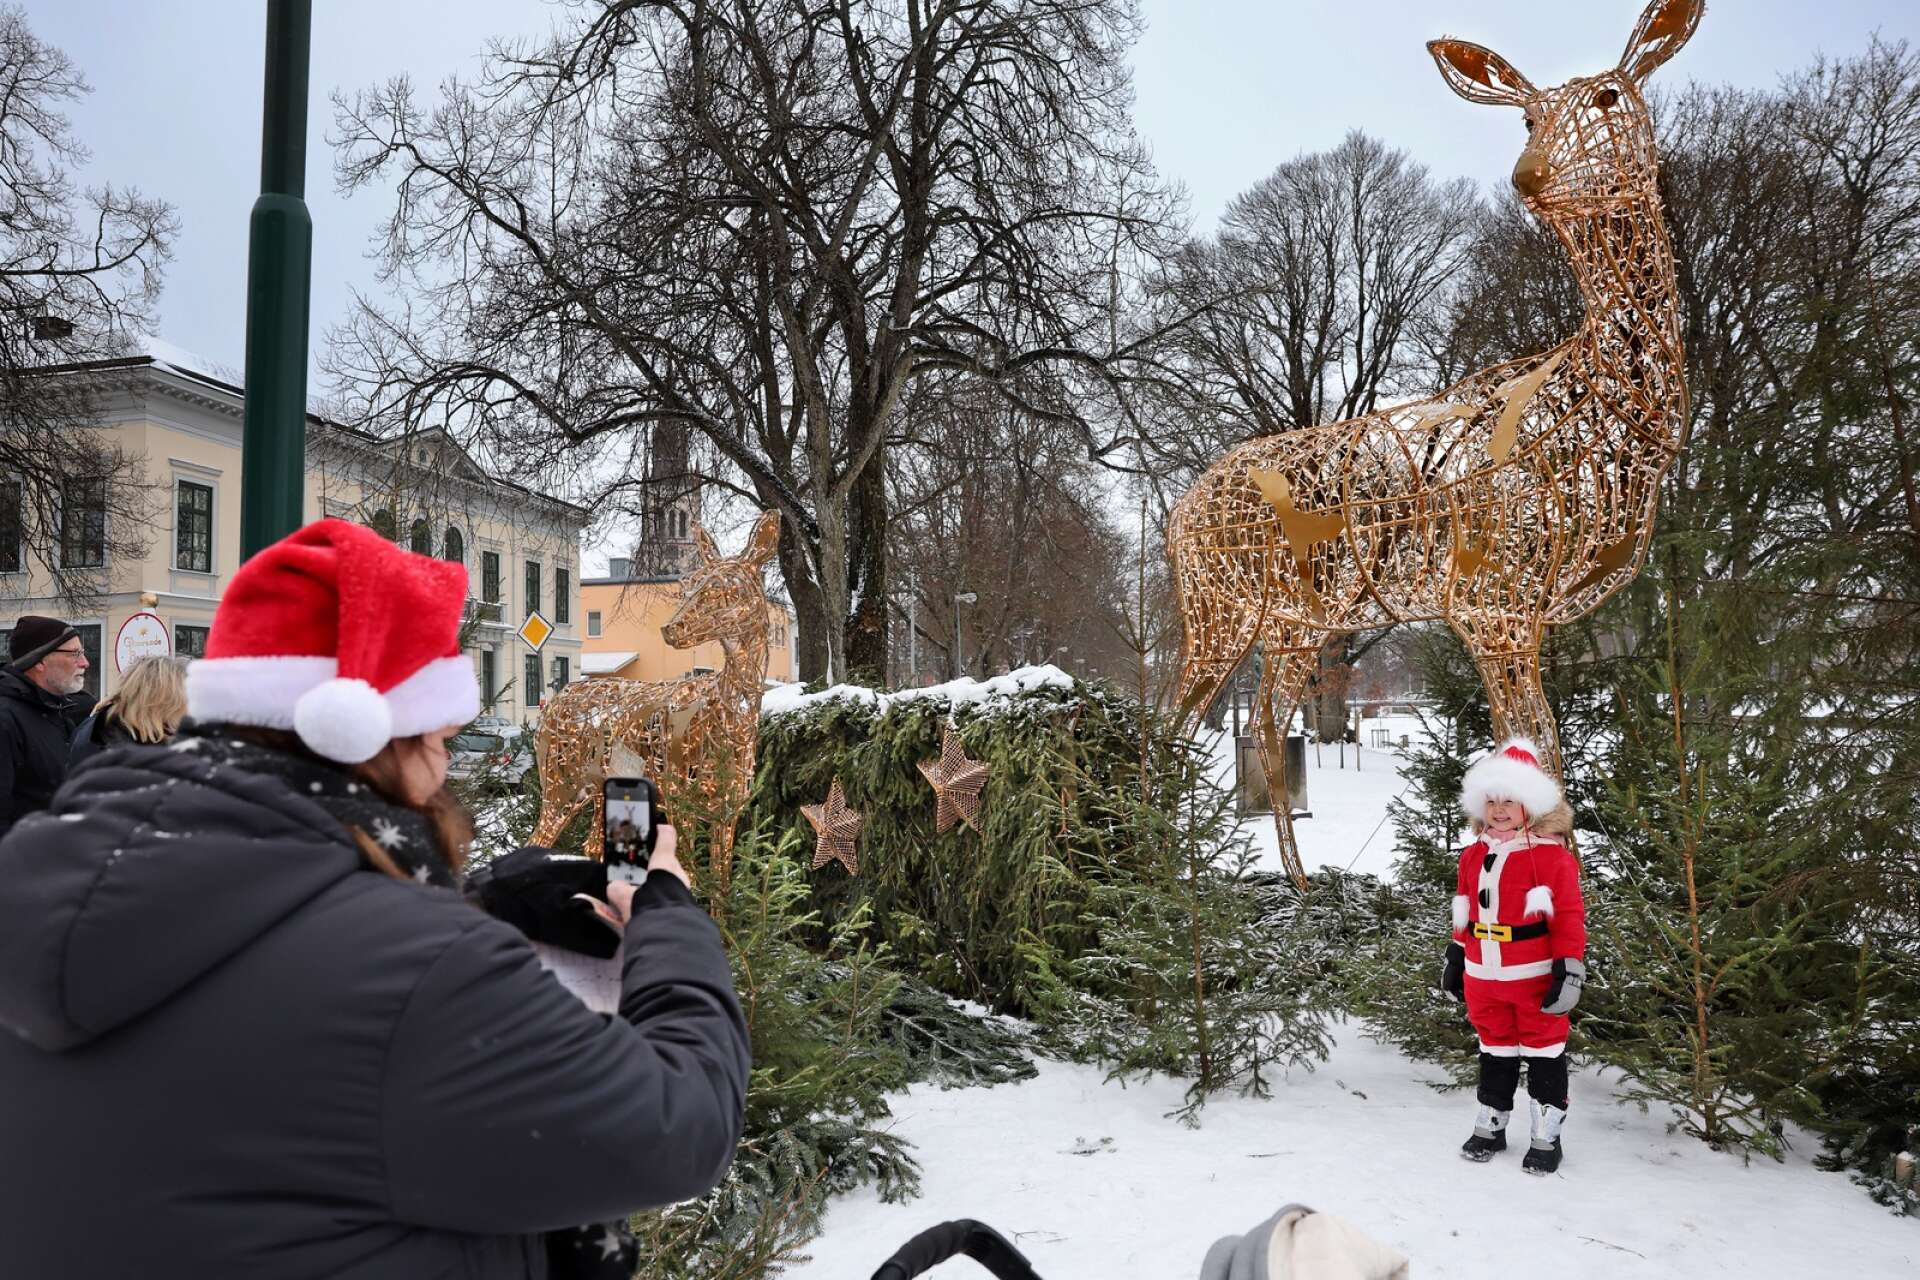 En liten jultomte vid namn Molly Hellemar passade på att hänga med på julresan i Lidköping, där sex olika hållplatser finns att beskåda med sin sagolika belysning. Ett mycket populärt inslag när julen invigdes i Lidköping under lördagen. 